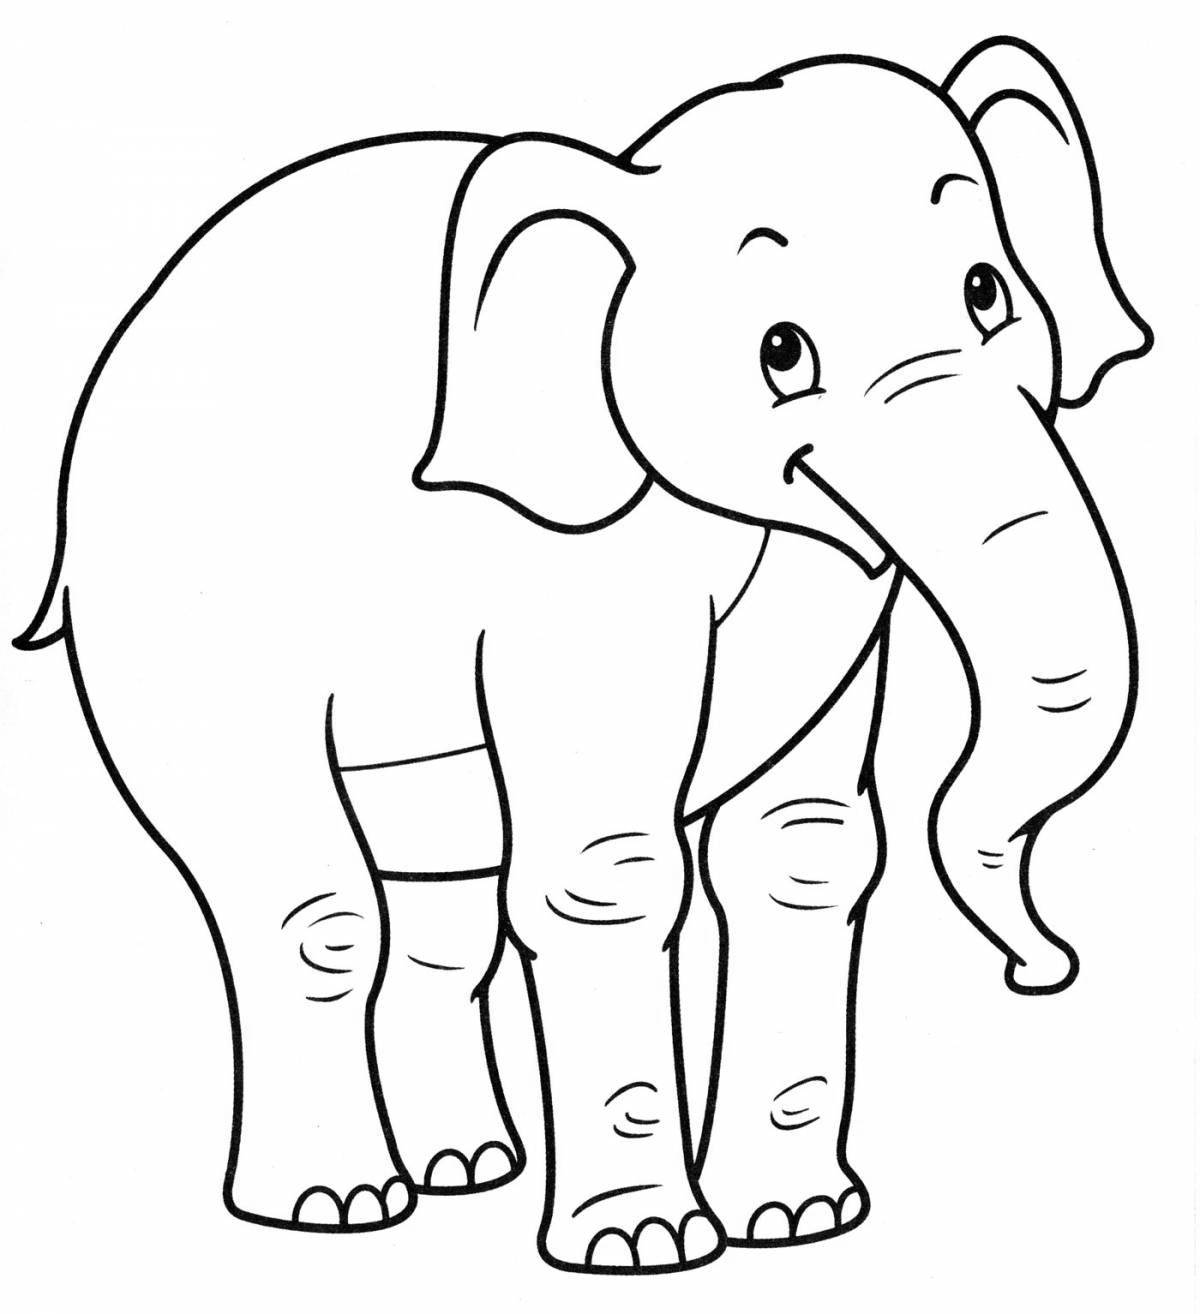 Грандиозная раскраска с изображением слона